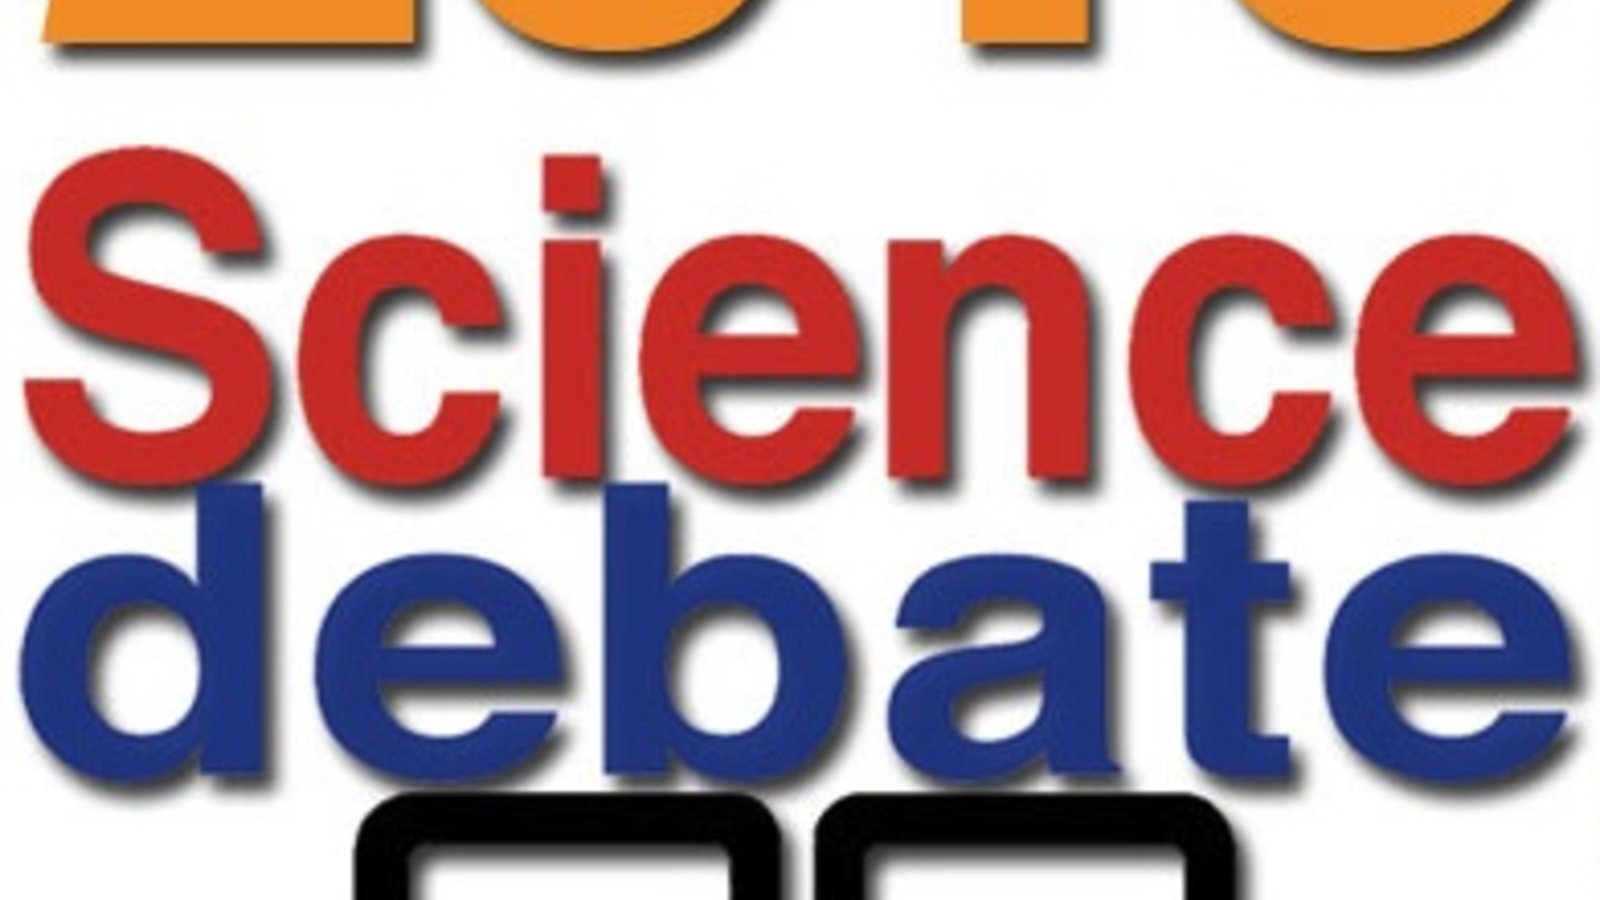 sciencedebate2016.jpg